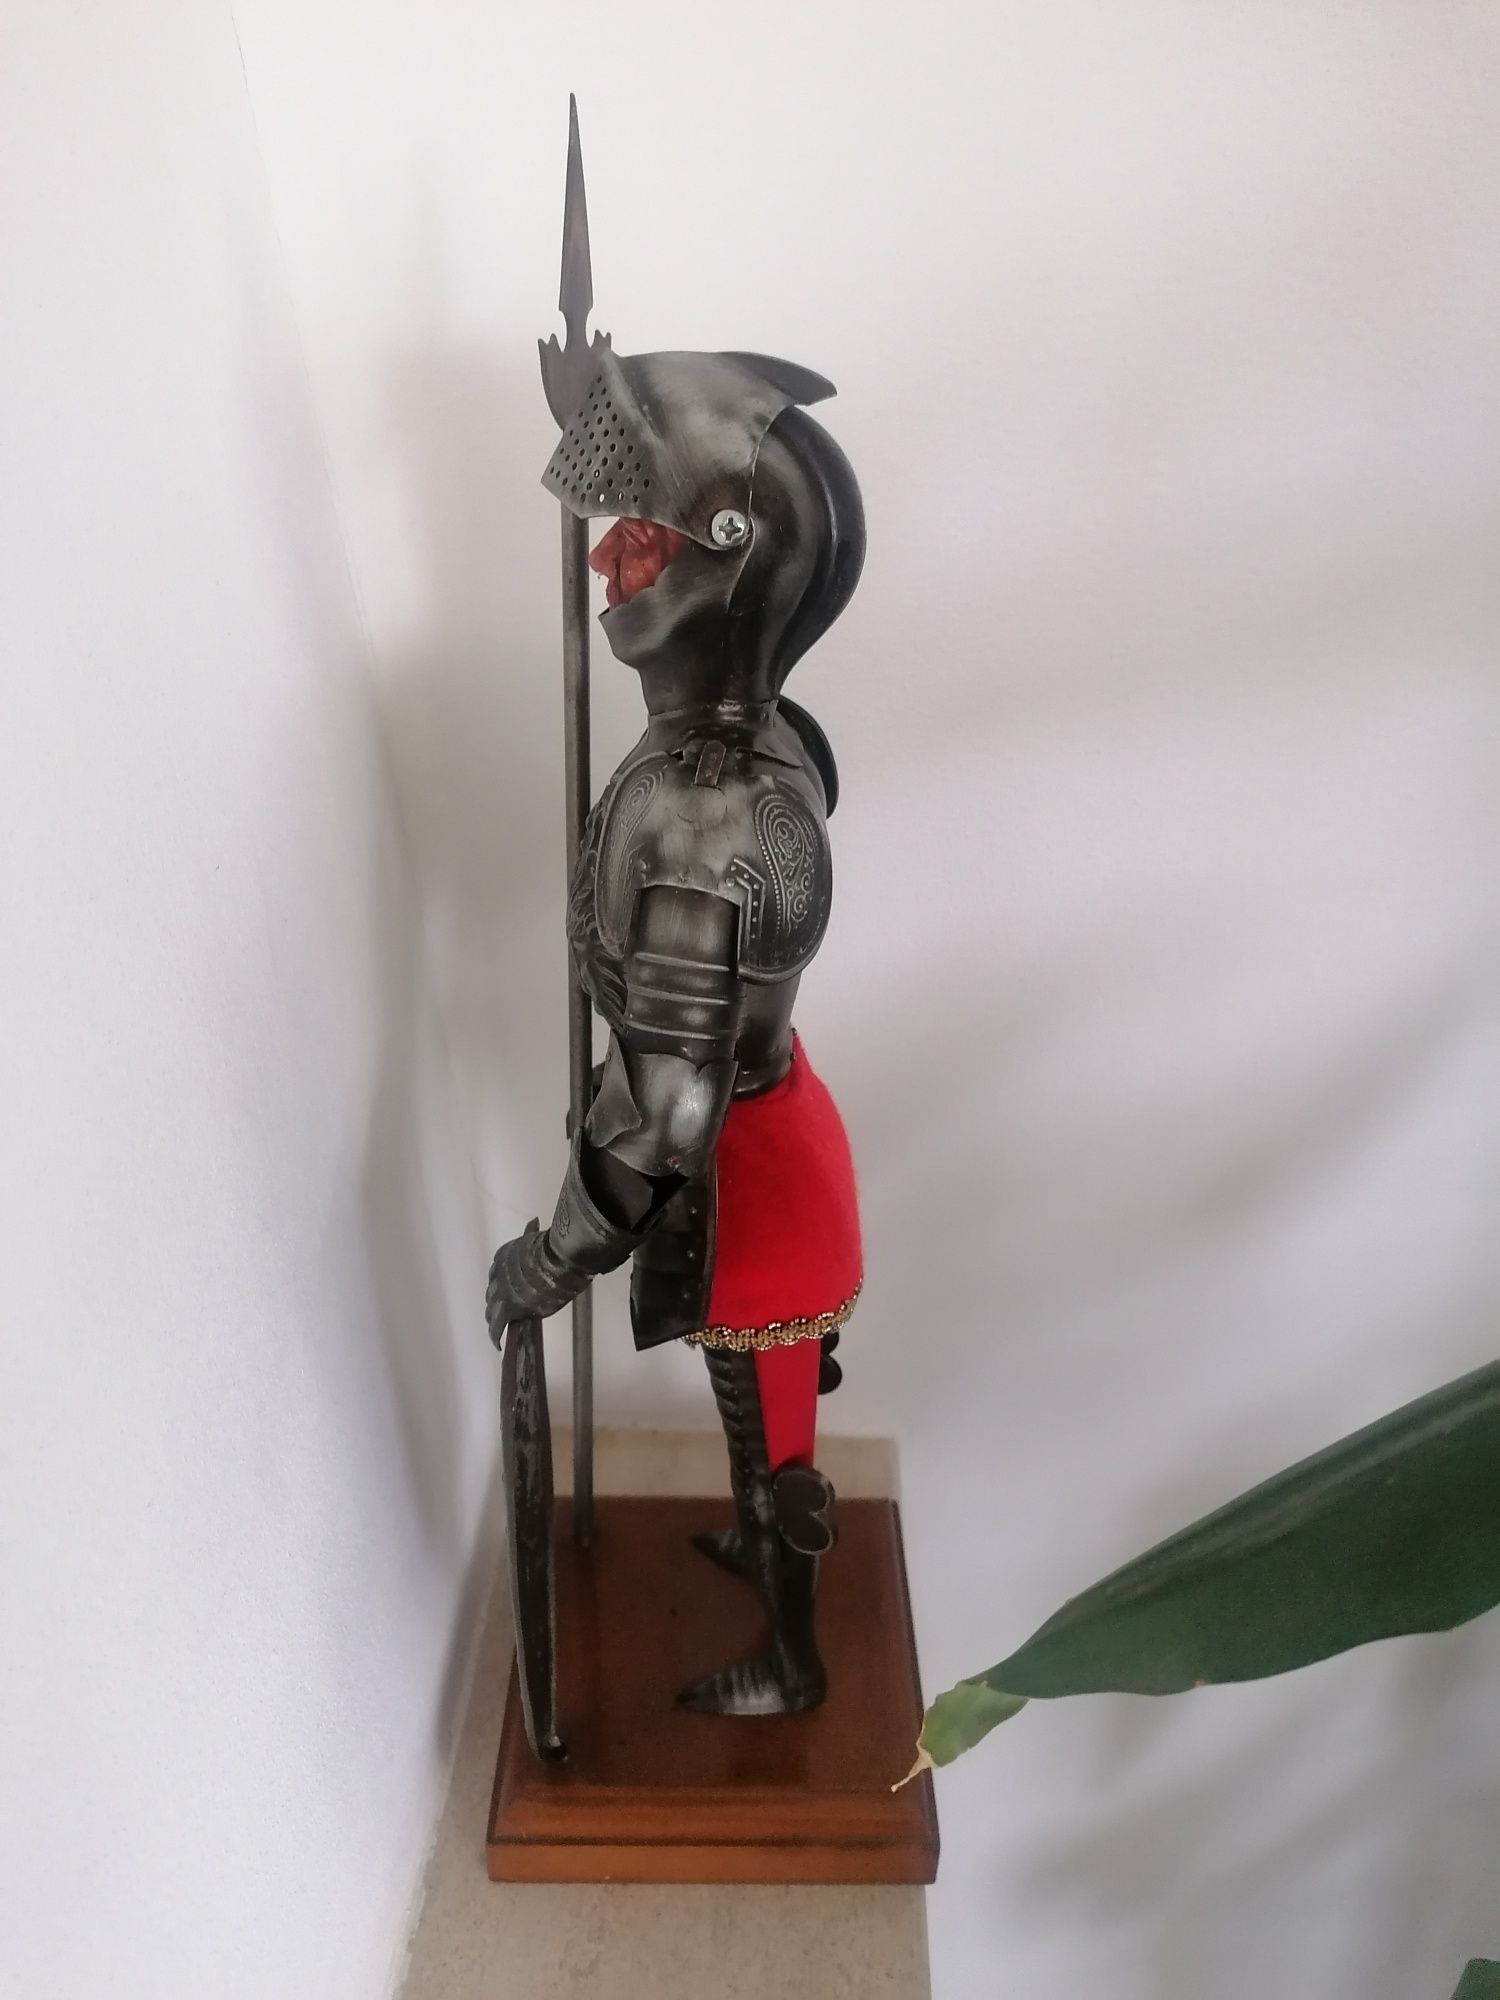 Guerreiro medieval espanhol com 0.42 cm  em metal, madeira e tecido...